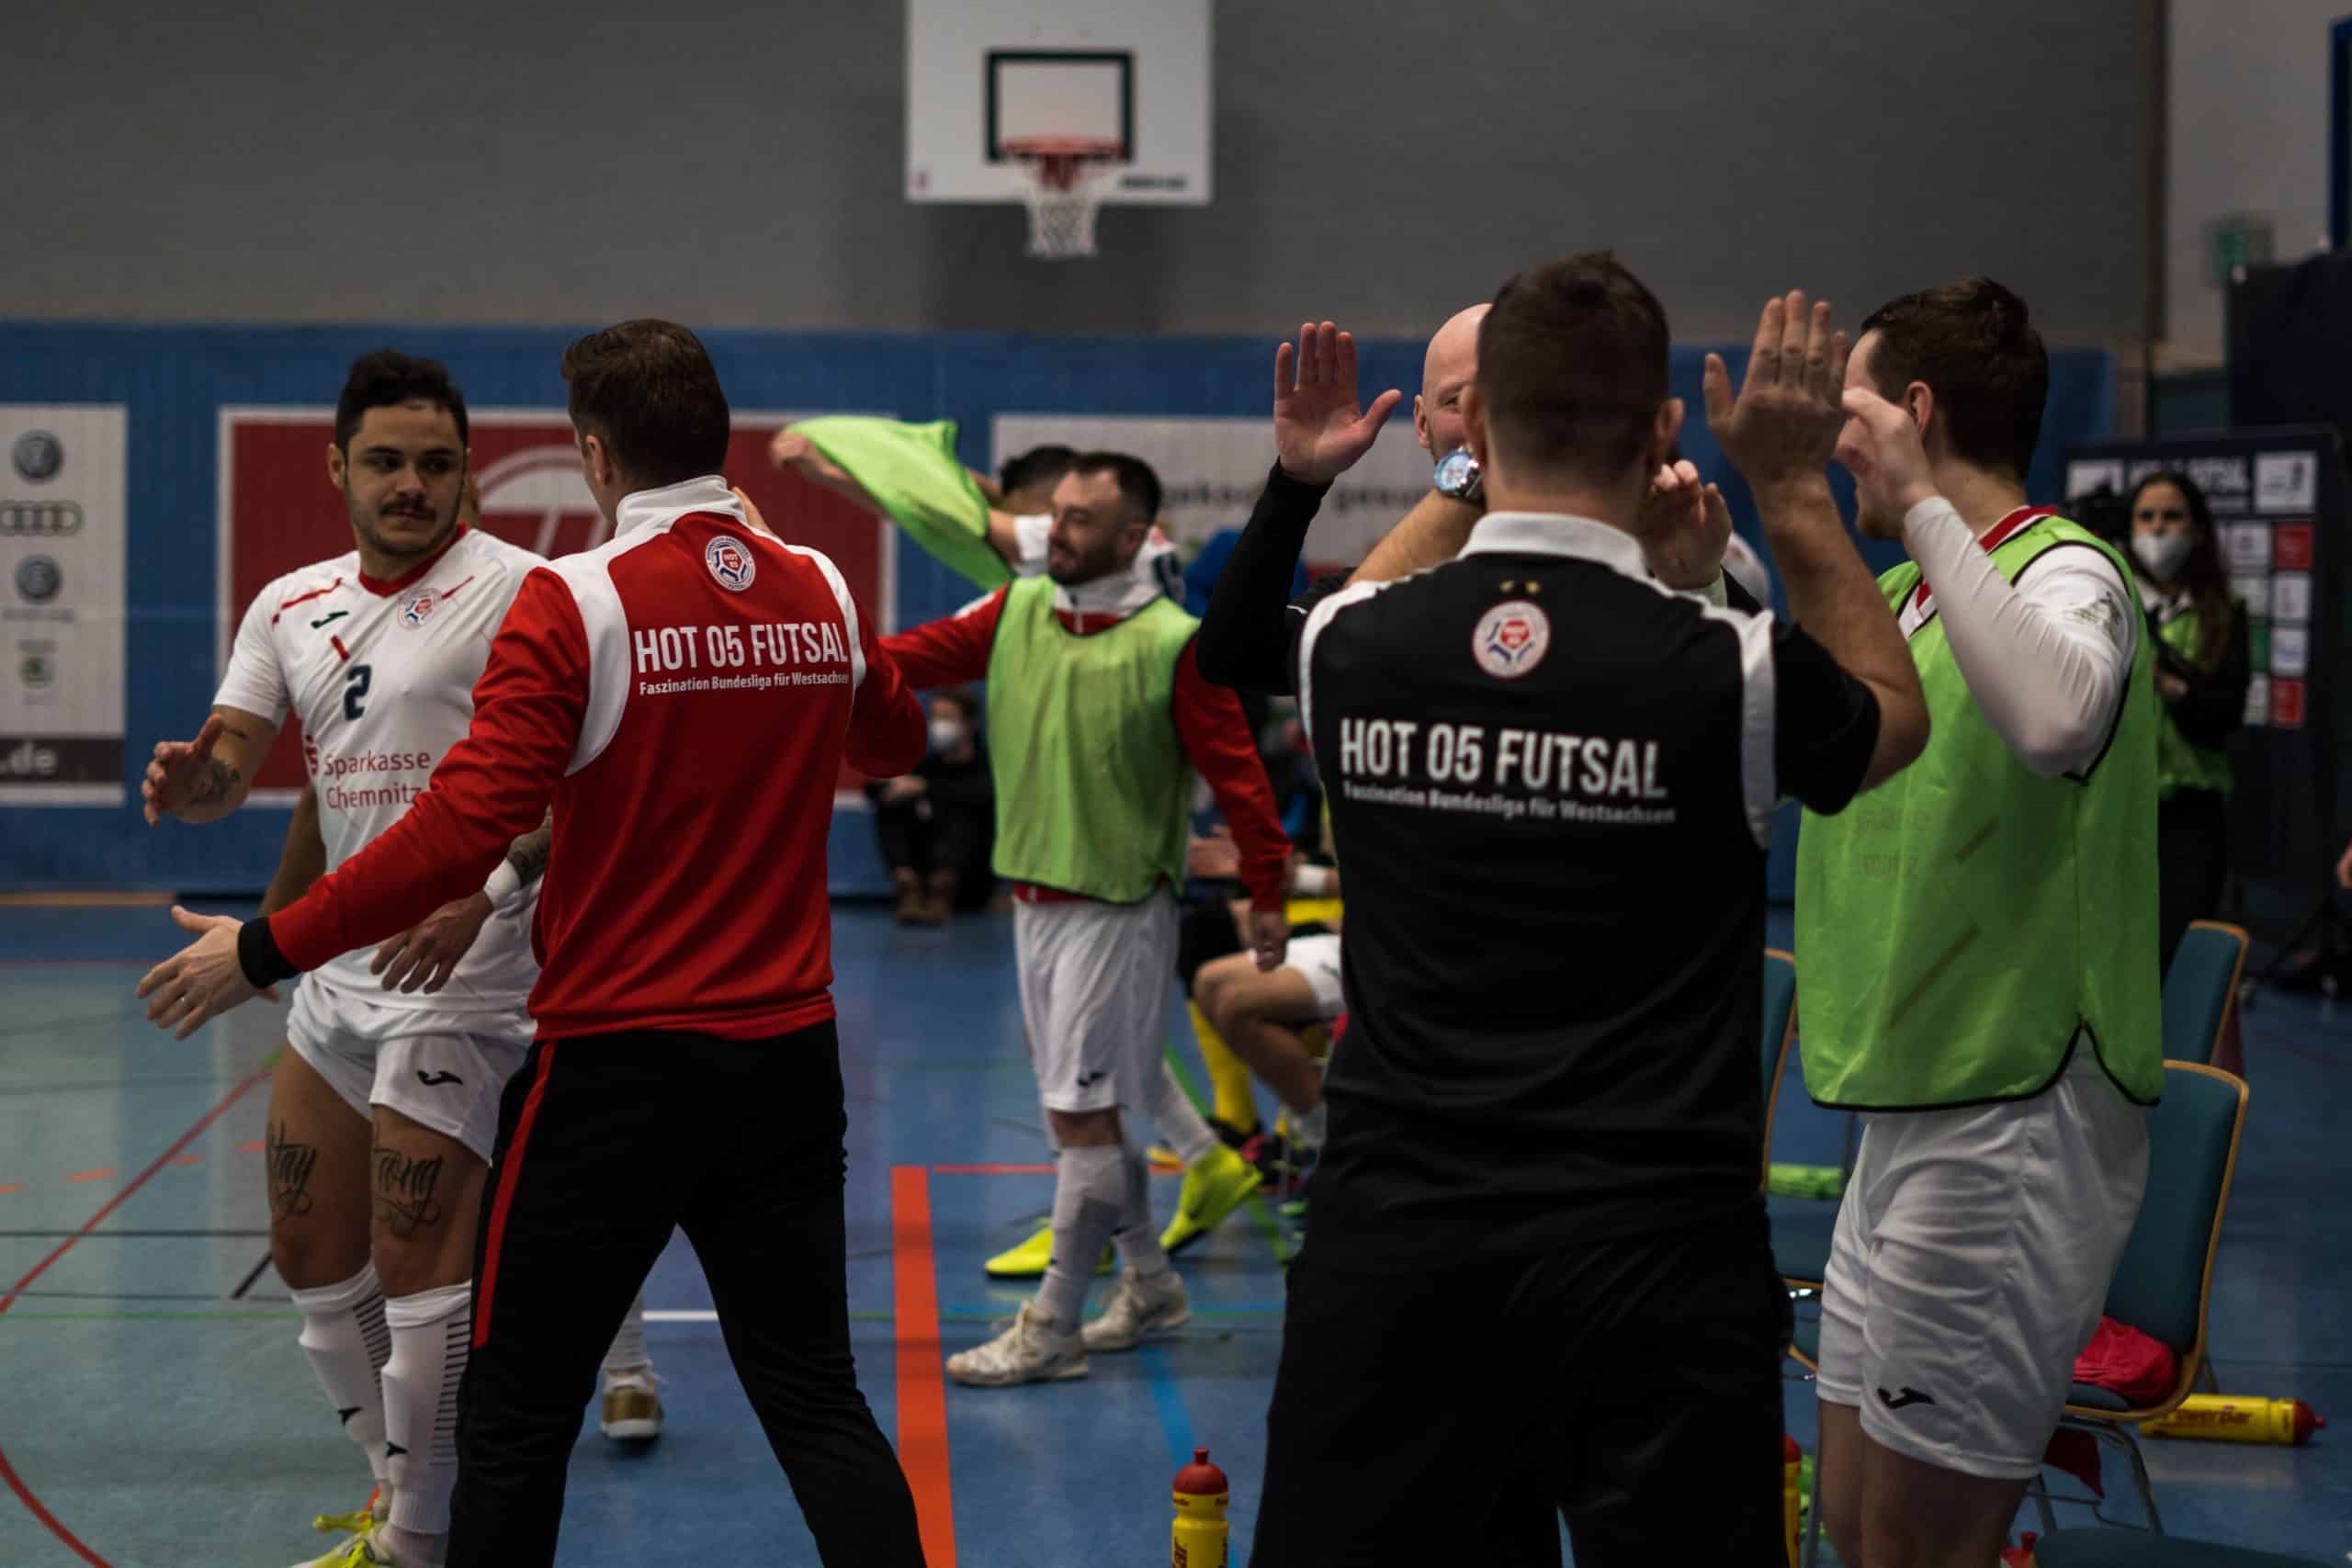 DSC04596 1 scaled - Die Futsal-Bundesliga geht in die Playoffs | Eine spannende Premierensaison im Überblick